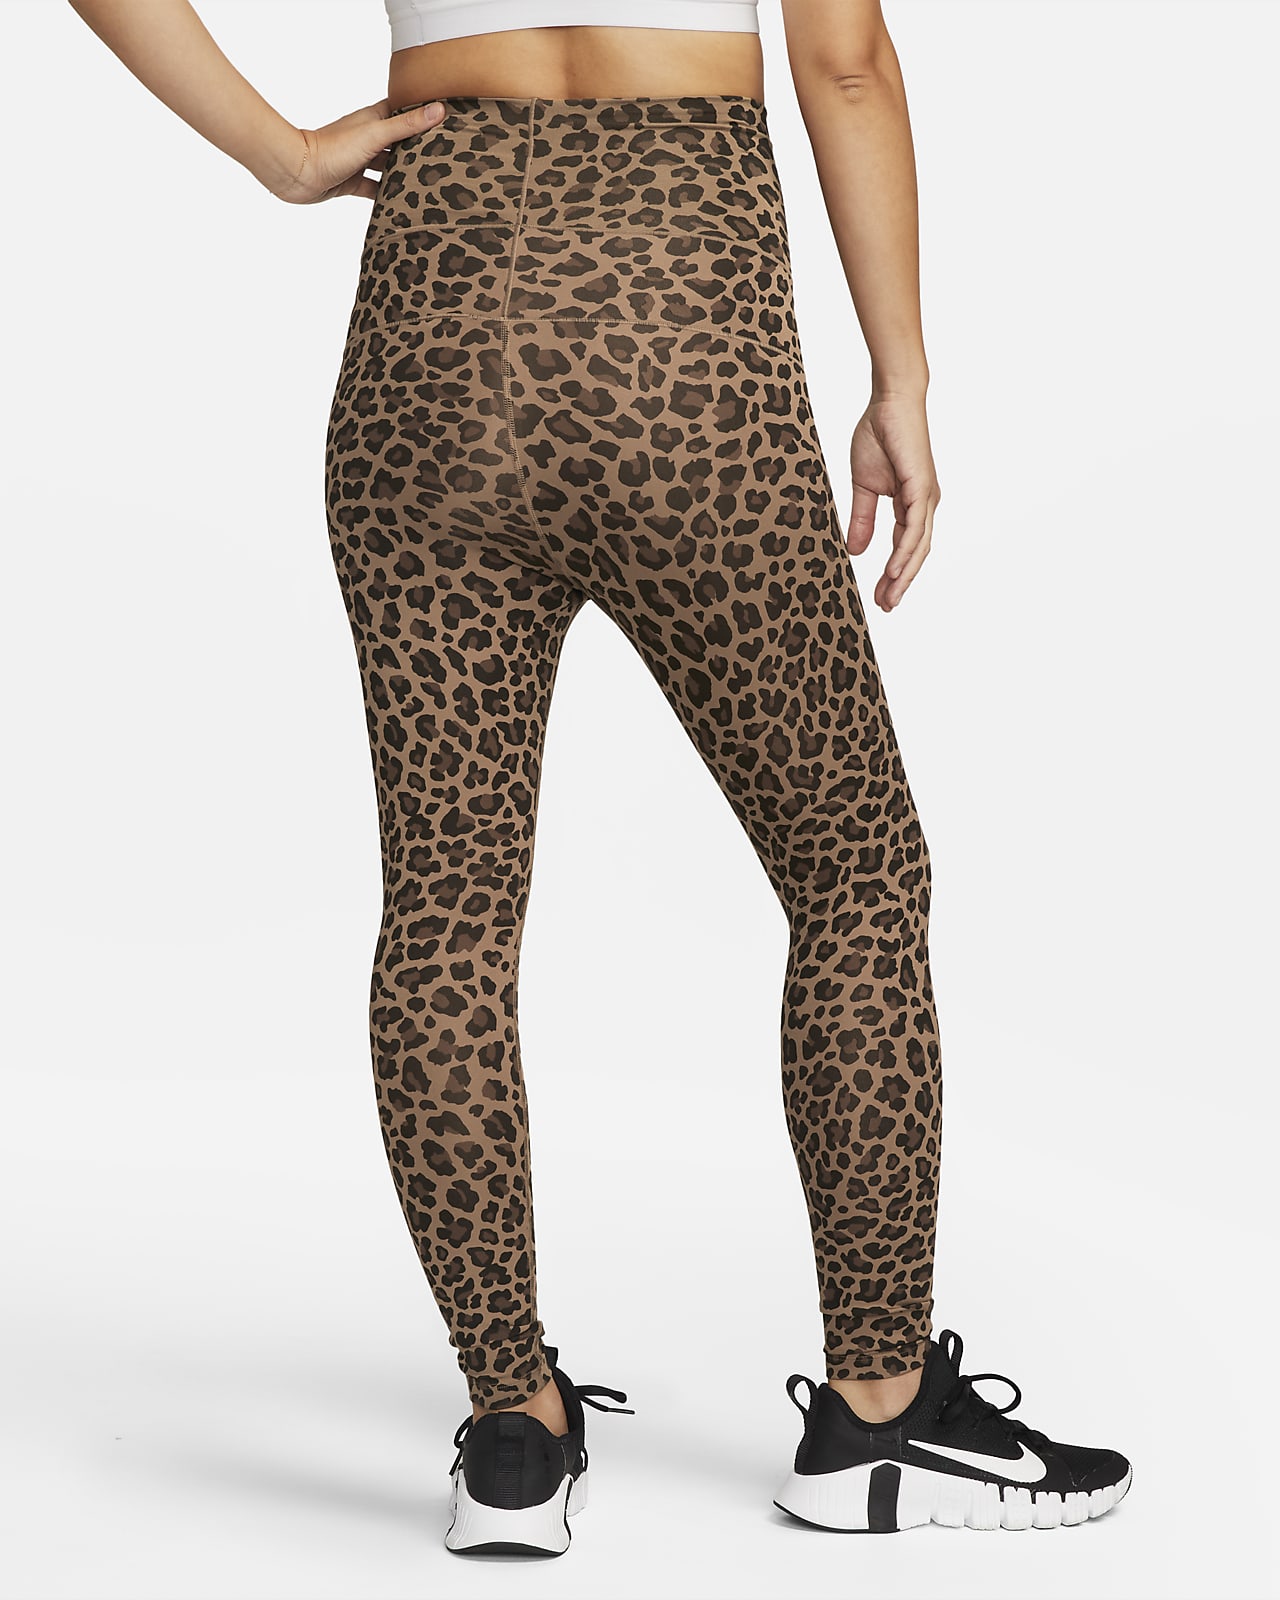 Nike One (M) High-Waisted Leopard Print Leggings (Maternity). Nike JP